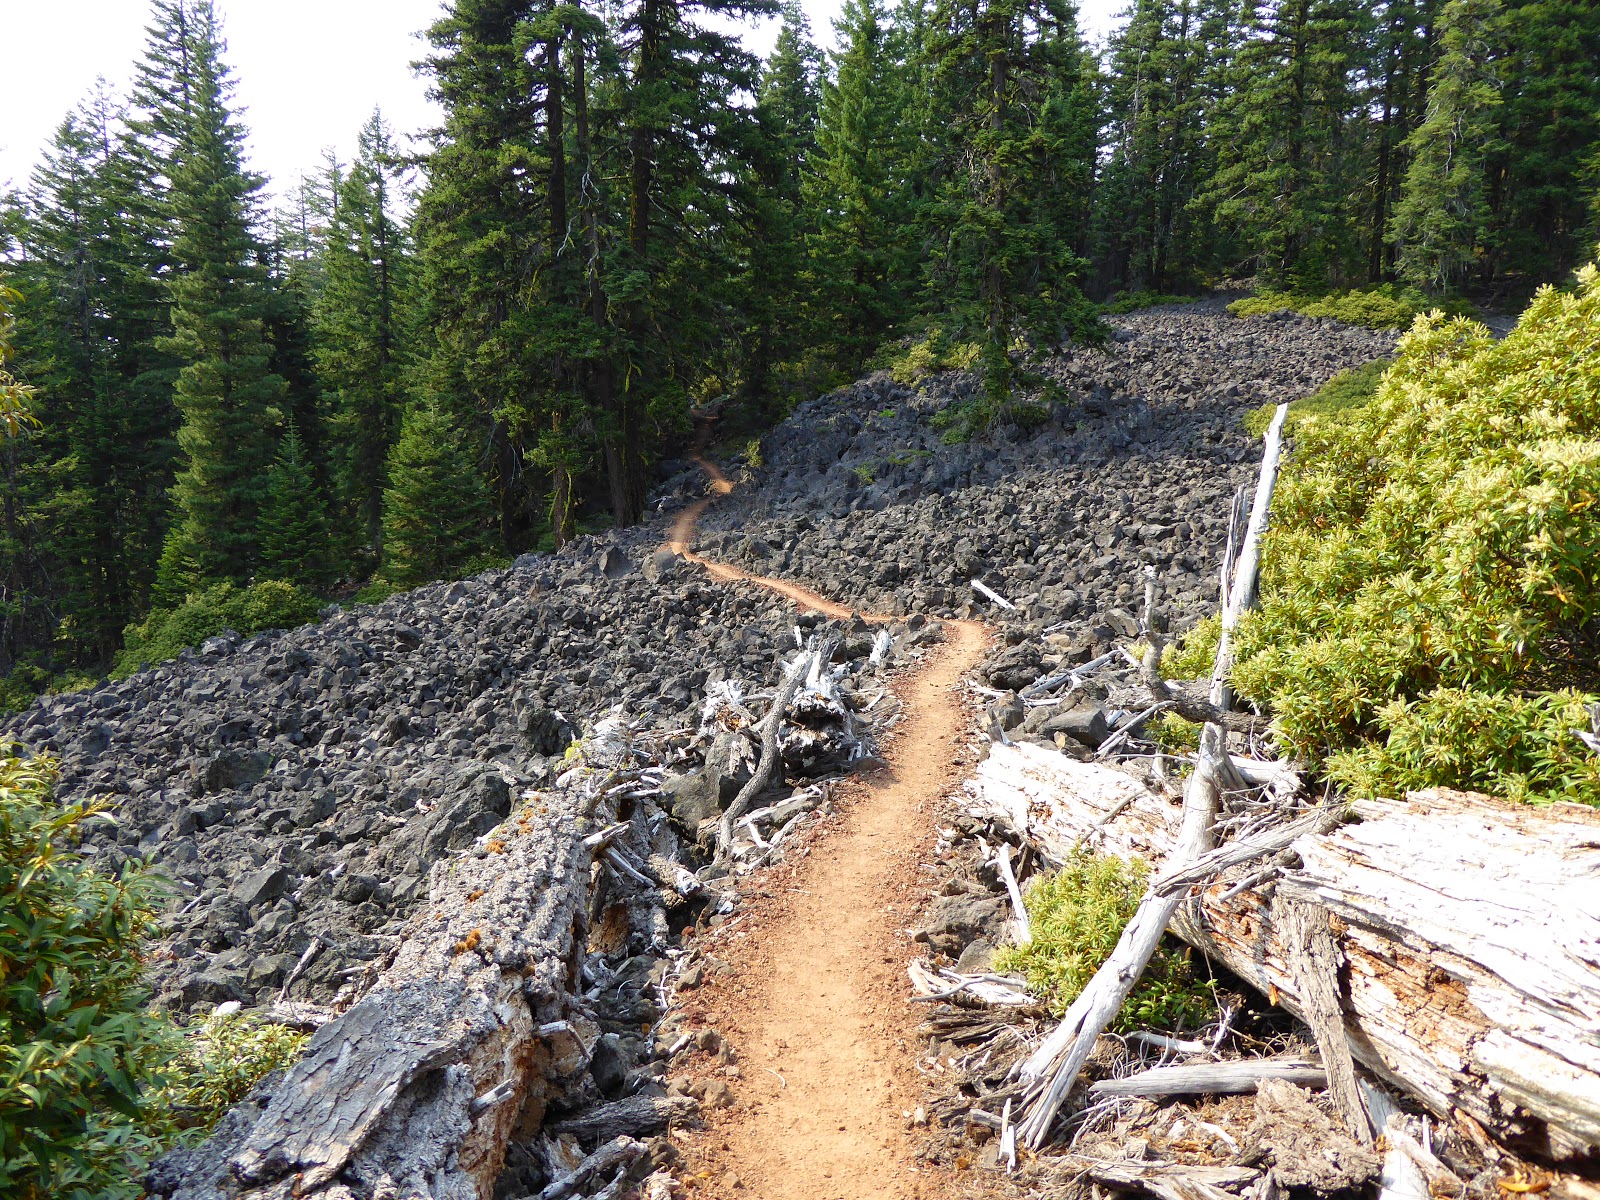 The trail crossed a lava rock scramble